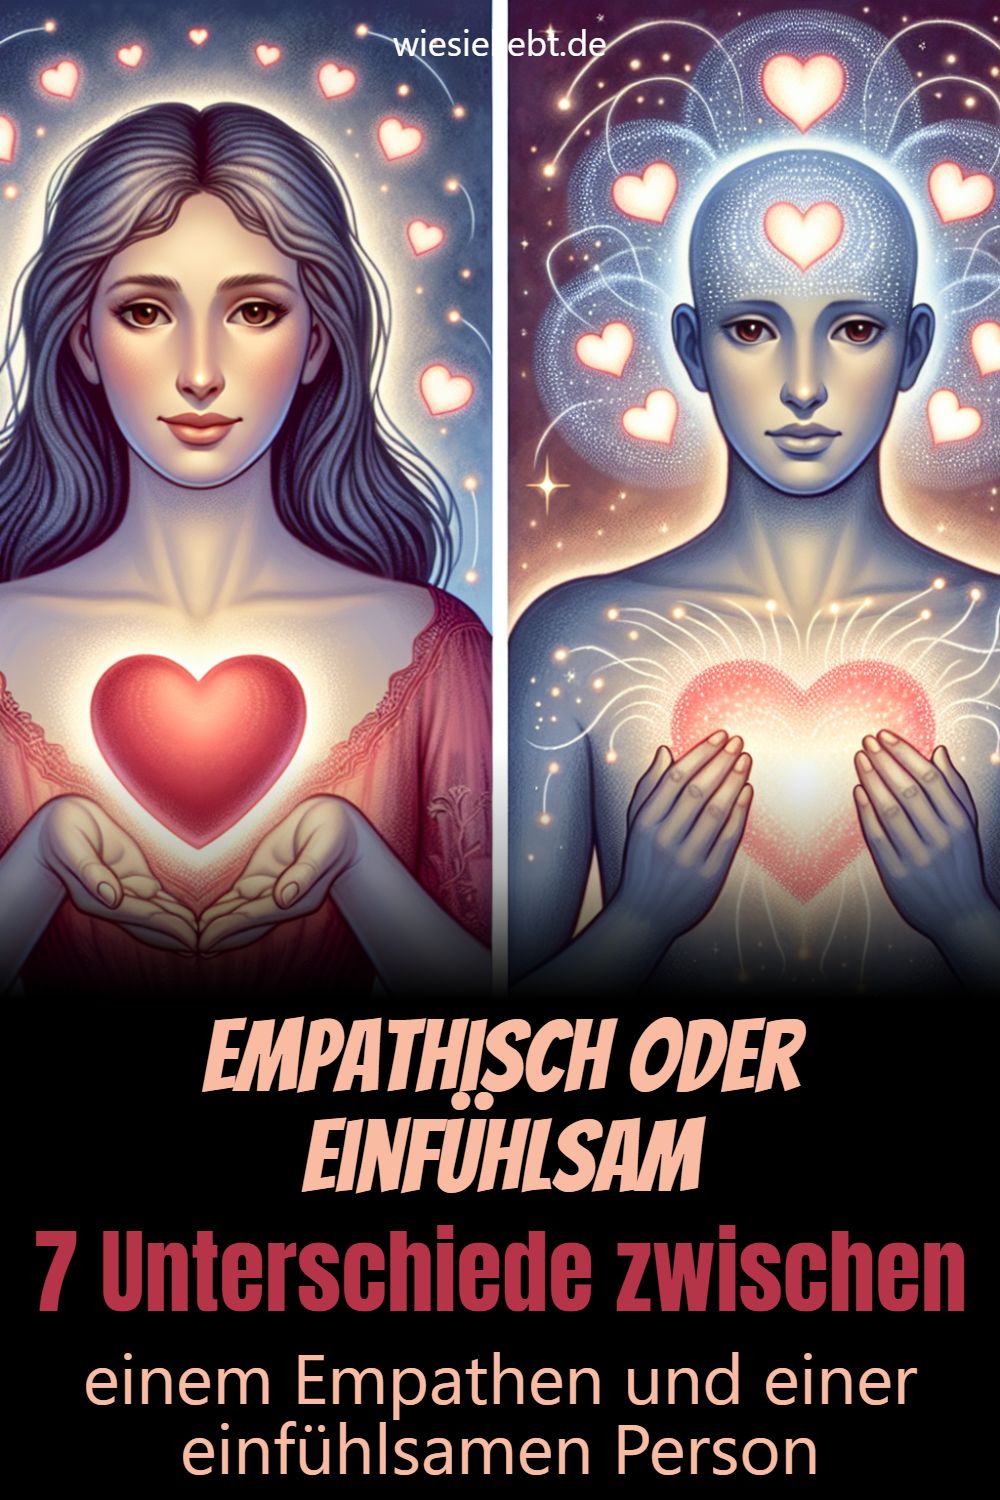 Empathisch oder einfühlsam 7 Unterschiede zwischen einem Empathen und einer einfühlsamen Person